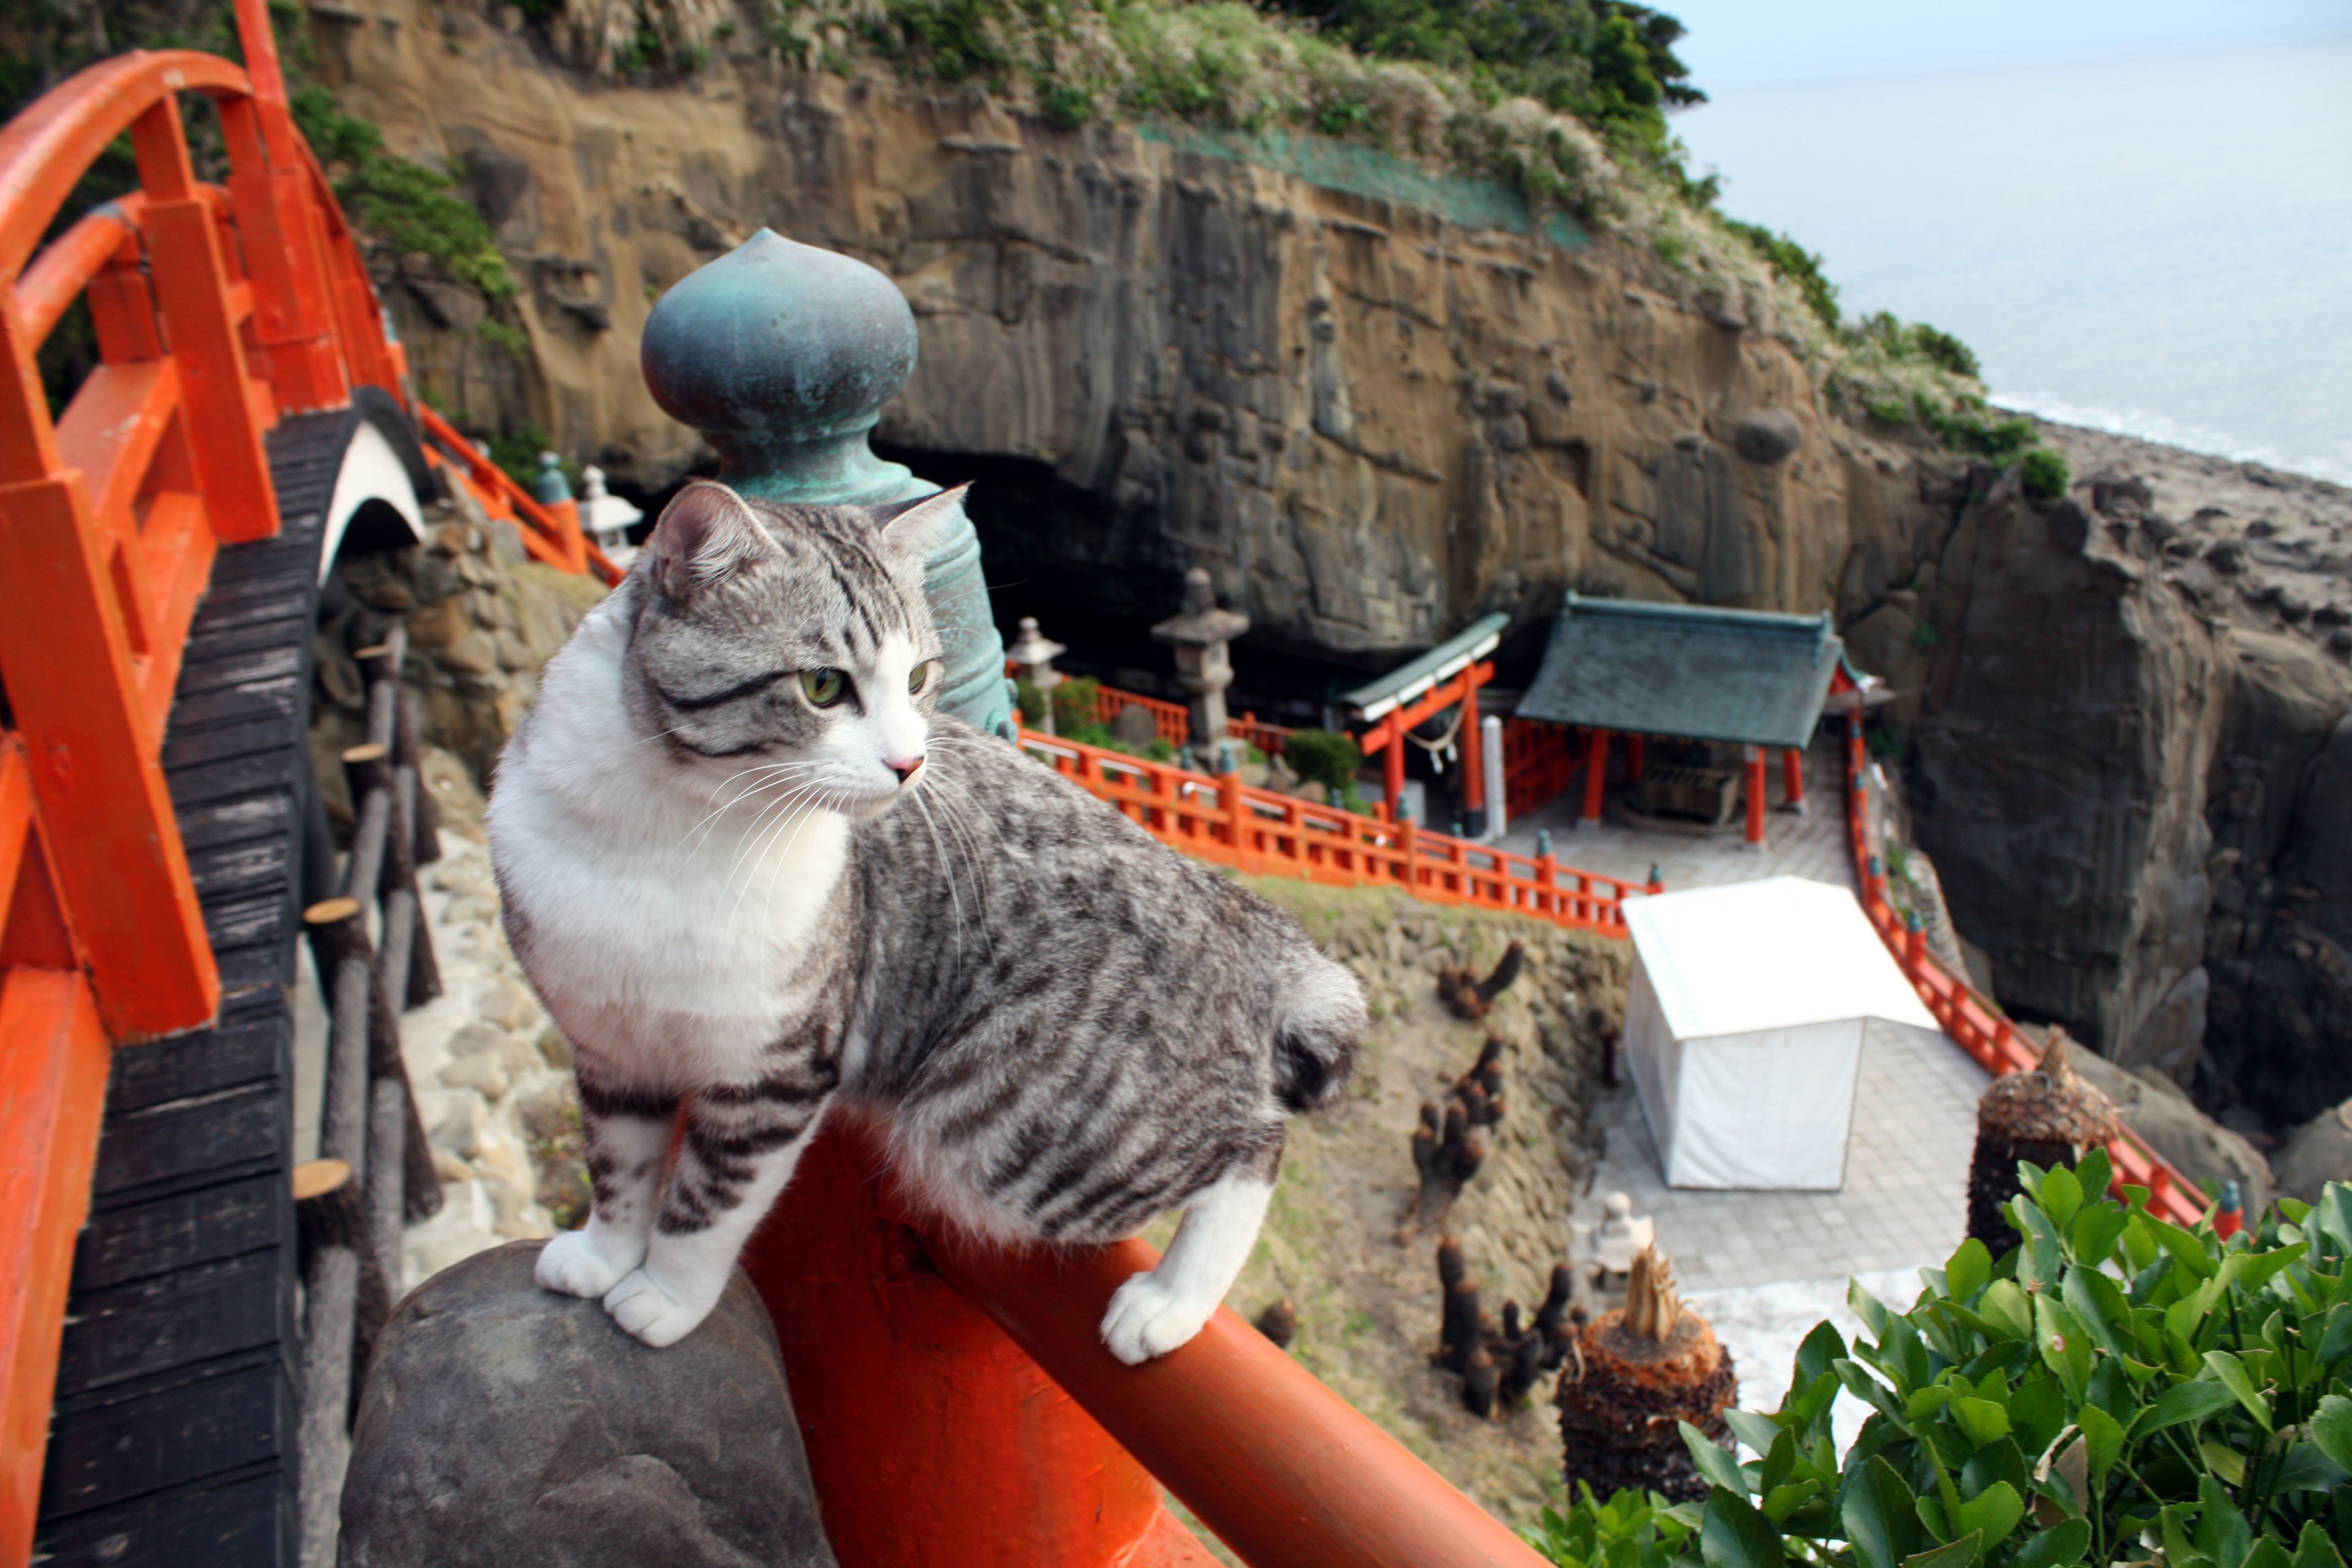 Udo Shrine あさイチで紹介された お乳岩 と 運玉 でおなじみの 鵜戸神宮にゃり 運試しできるパワースポット Steemit